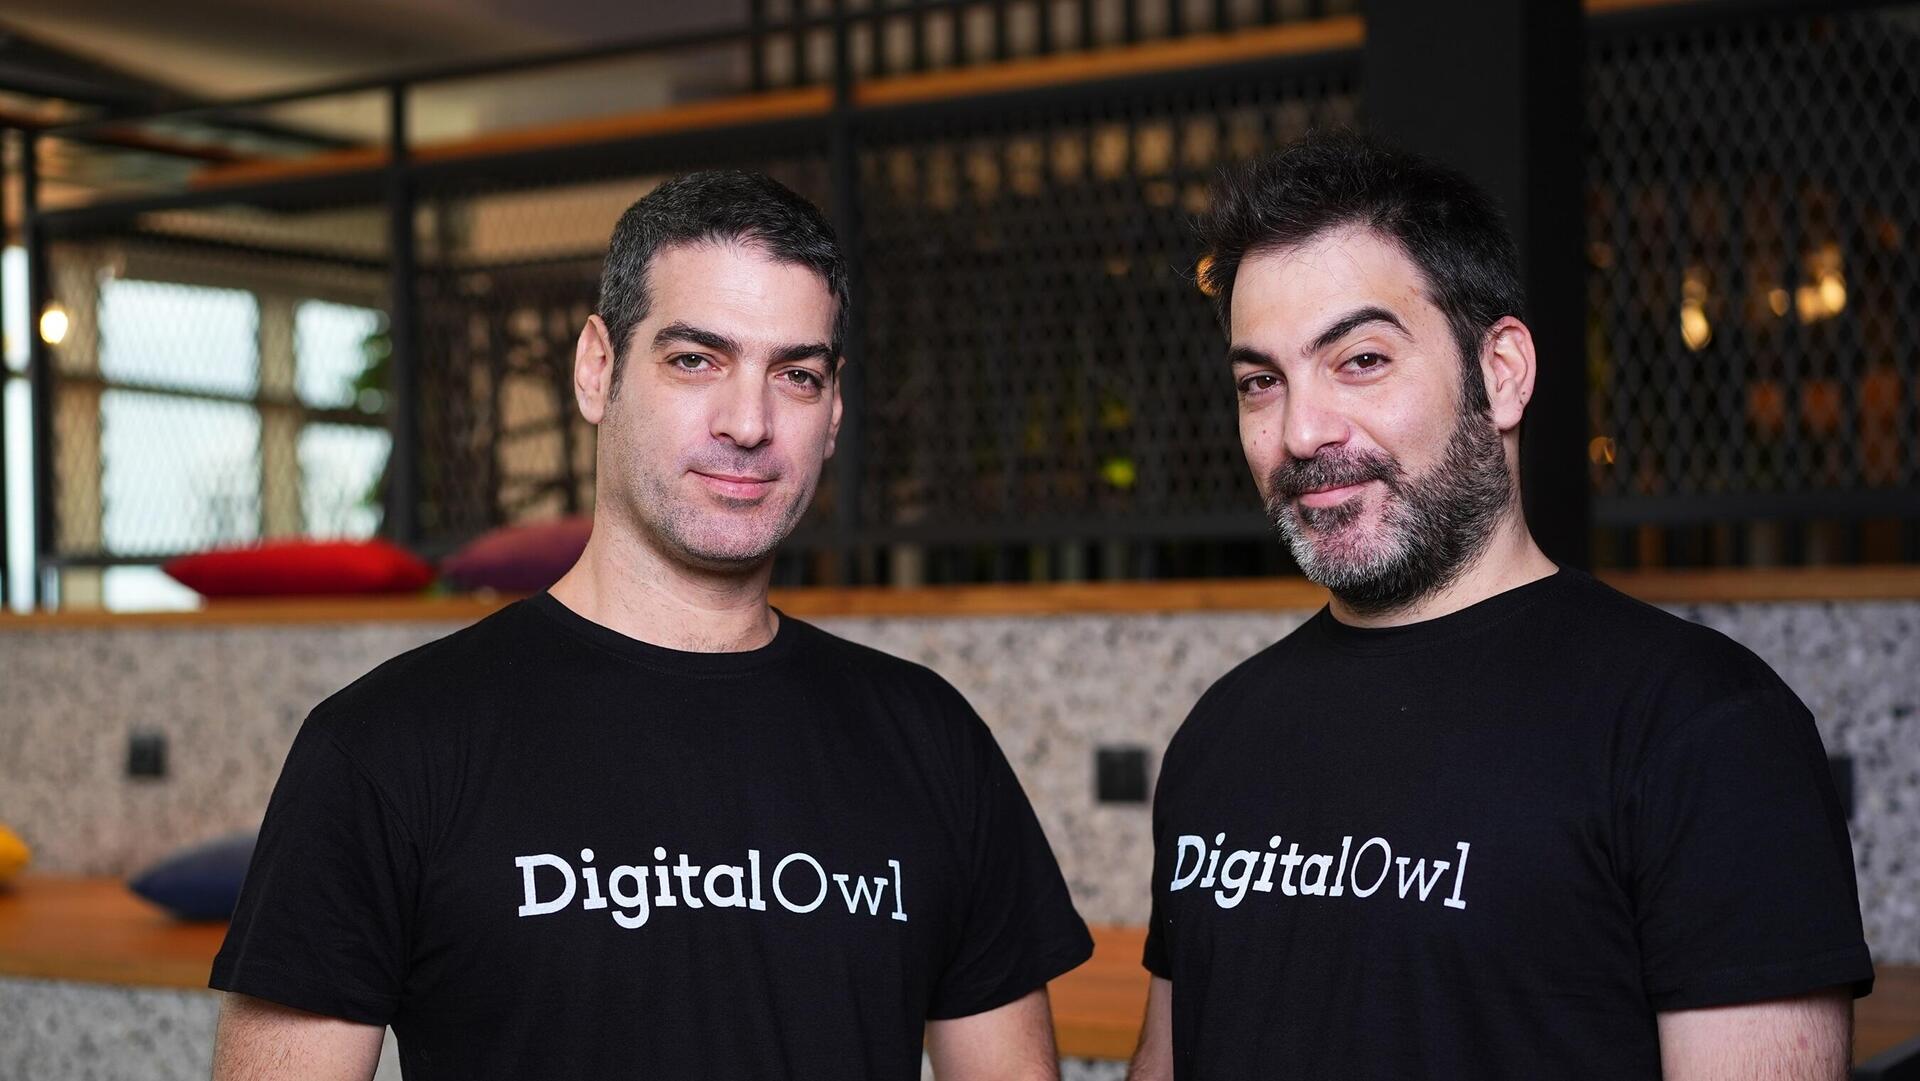 DigitalOwl founders